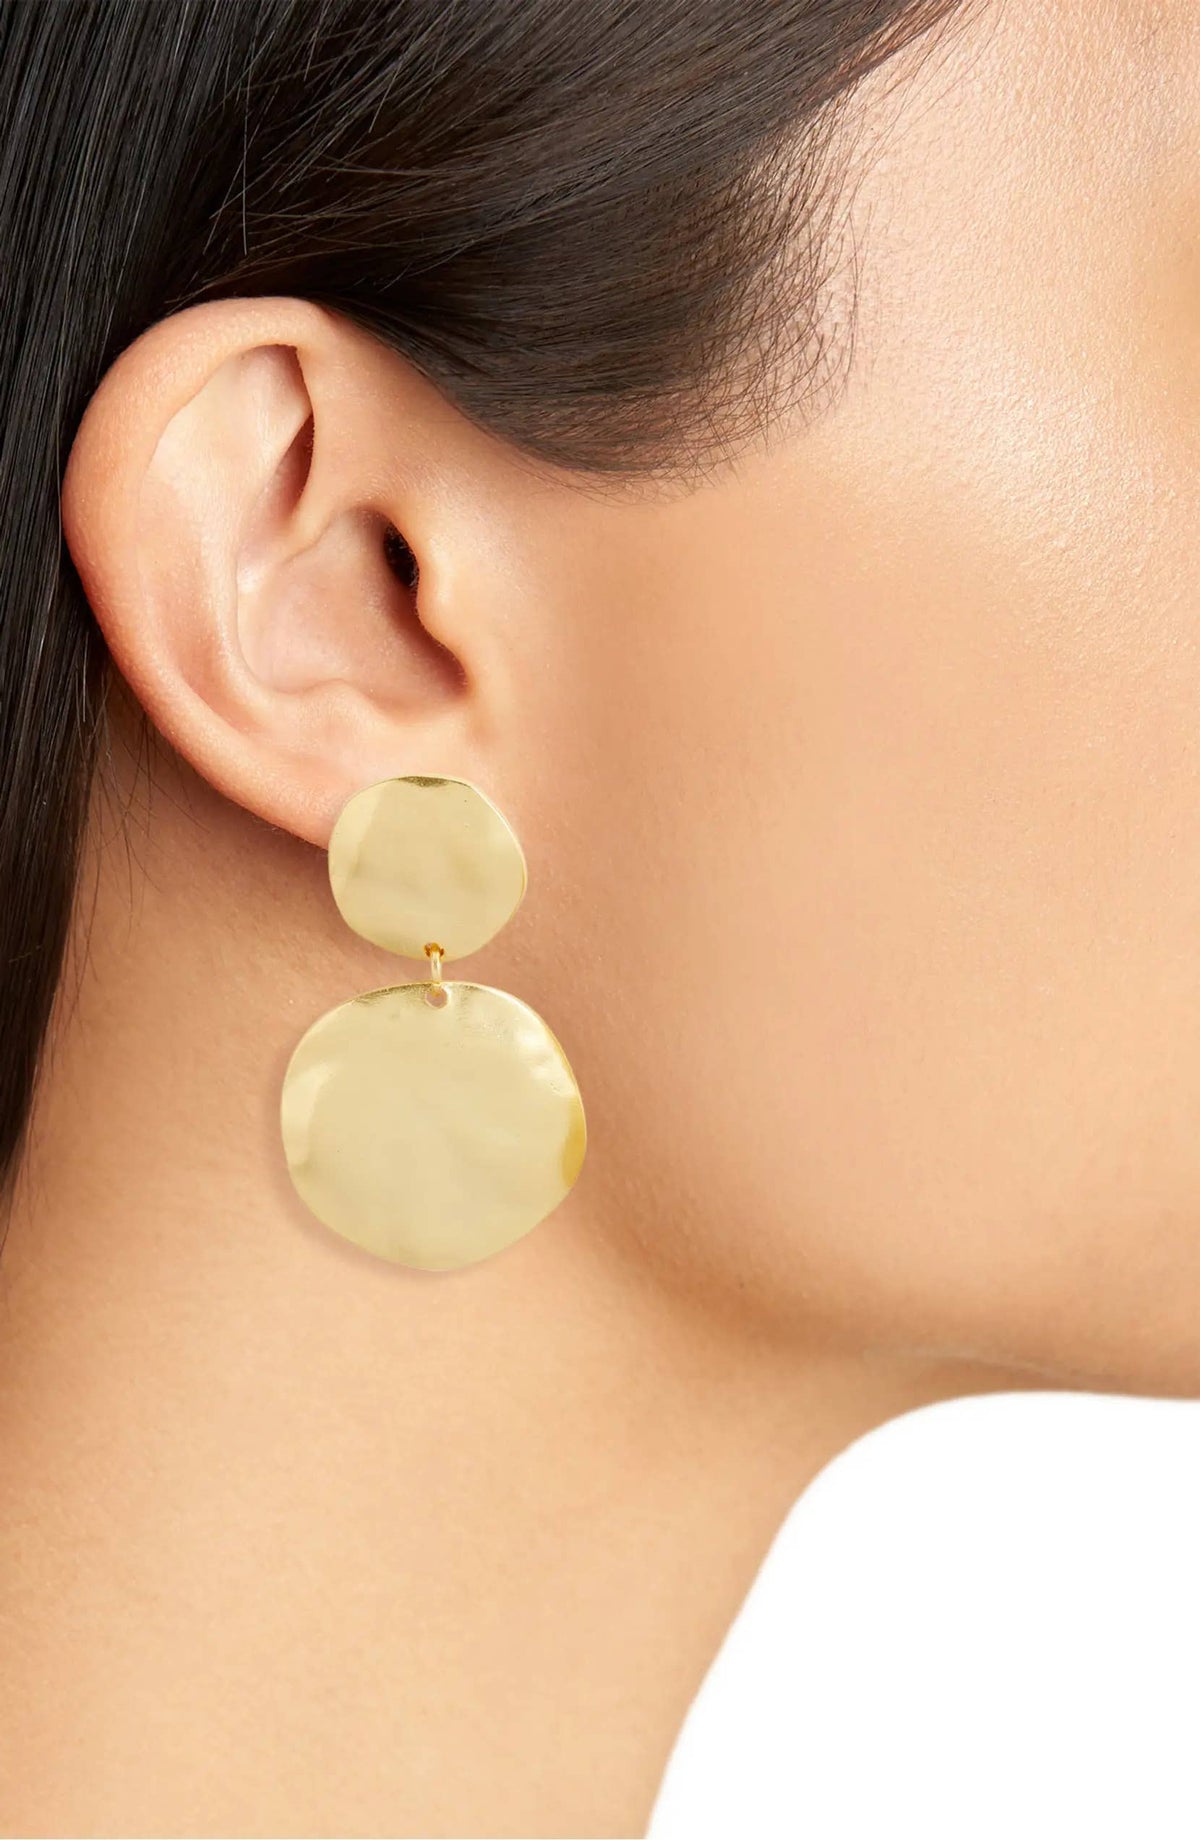 Clip-on Earrings | Irregular Discs Dangles - Gold | Karine Sultan